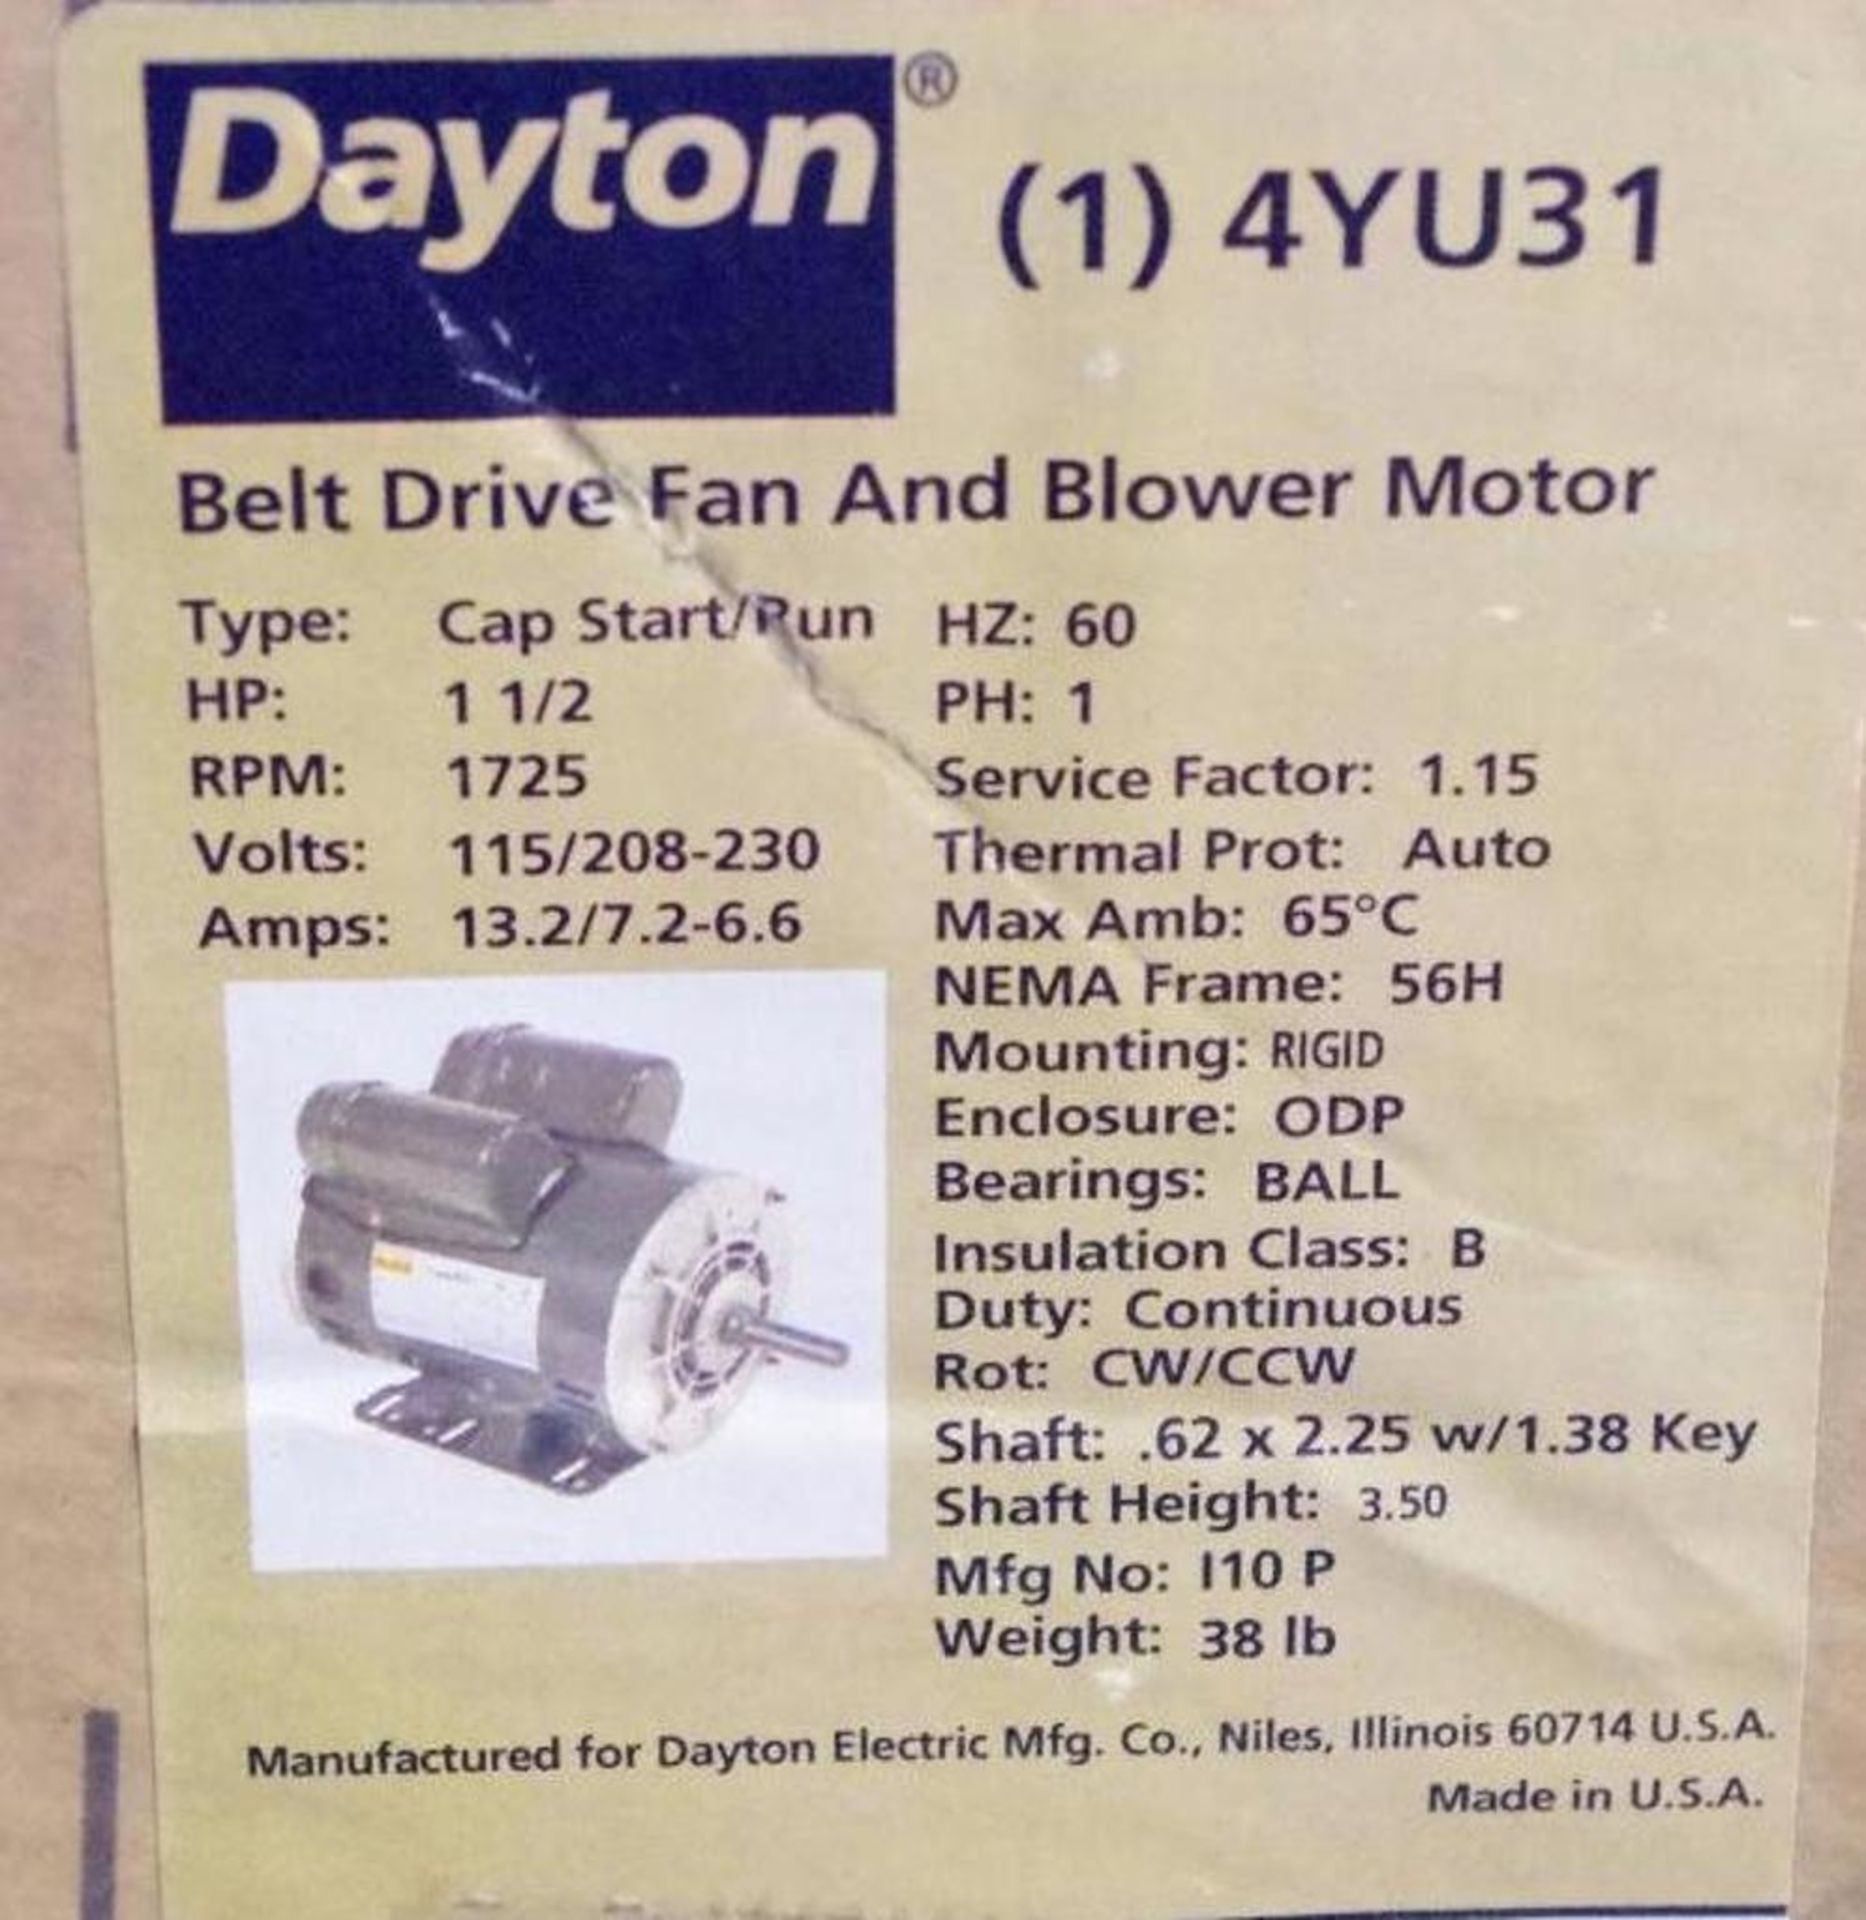 [2] DAYTON Belt Drive Fan & Blower Motors M/N 4YU31 (Condition Unknown) - Image 3 of 3